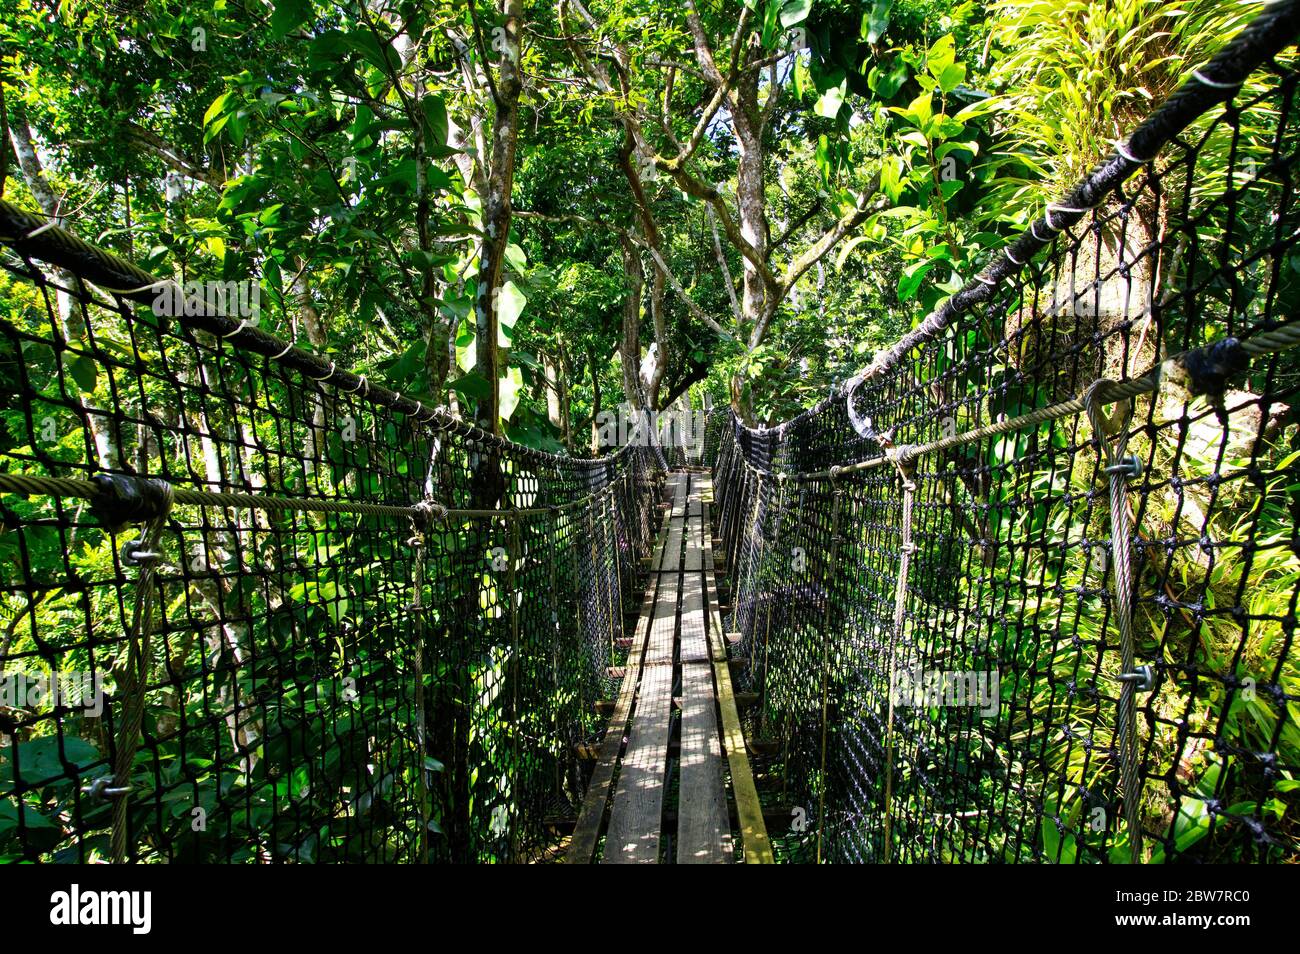 BASSE-TERRE/GUADELOUPE - 07 JANVIER 2019 : ponts suspendus au sommet des arbres du Parc des Mamelles, au zoo de la Guadeloupe, au milieu de la forêt tropicale Banque D'Images